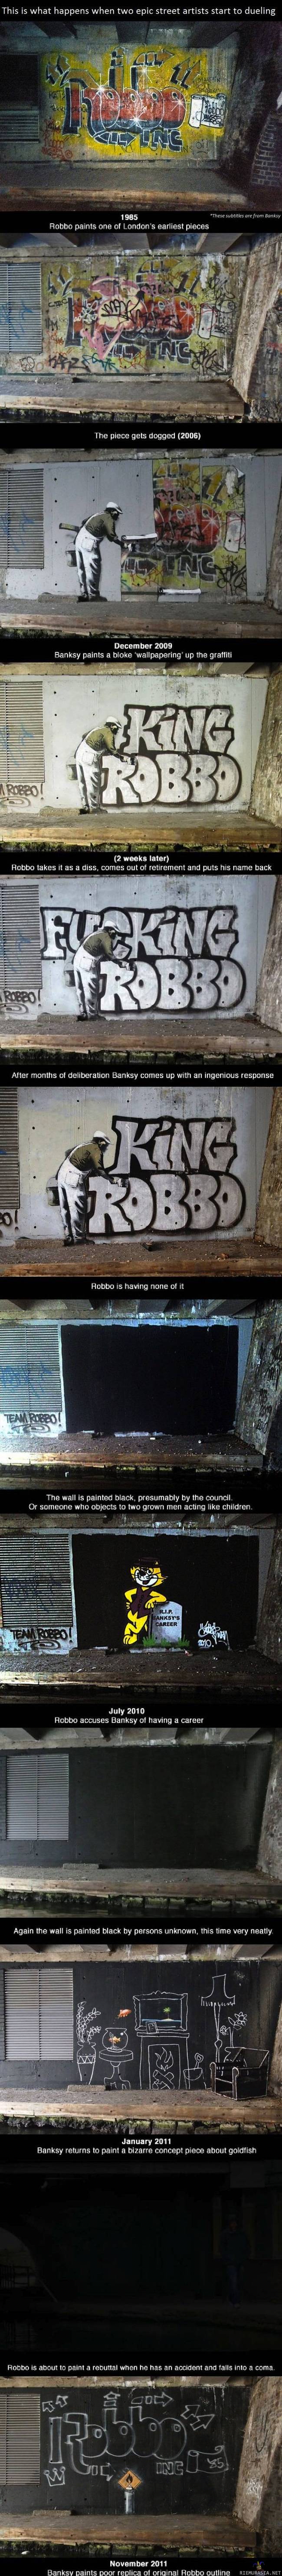 Banksy vs. Robbo - Graffitiartistit